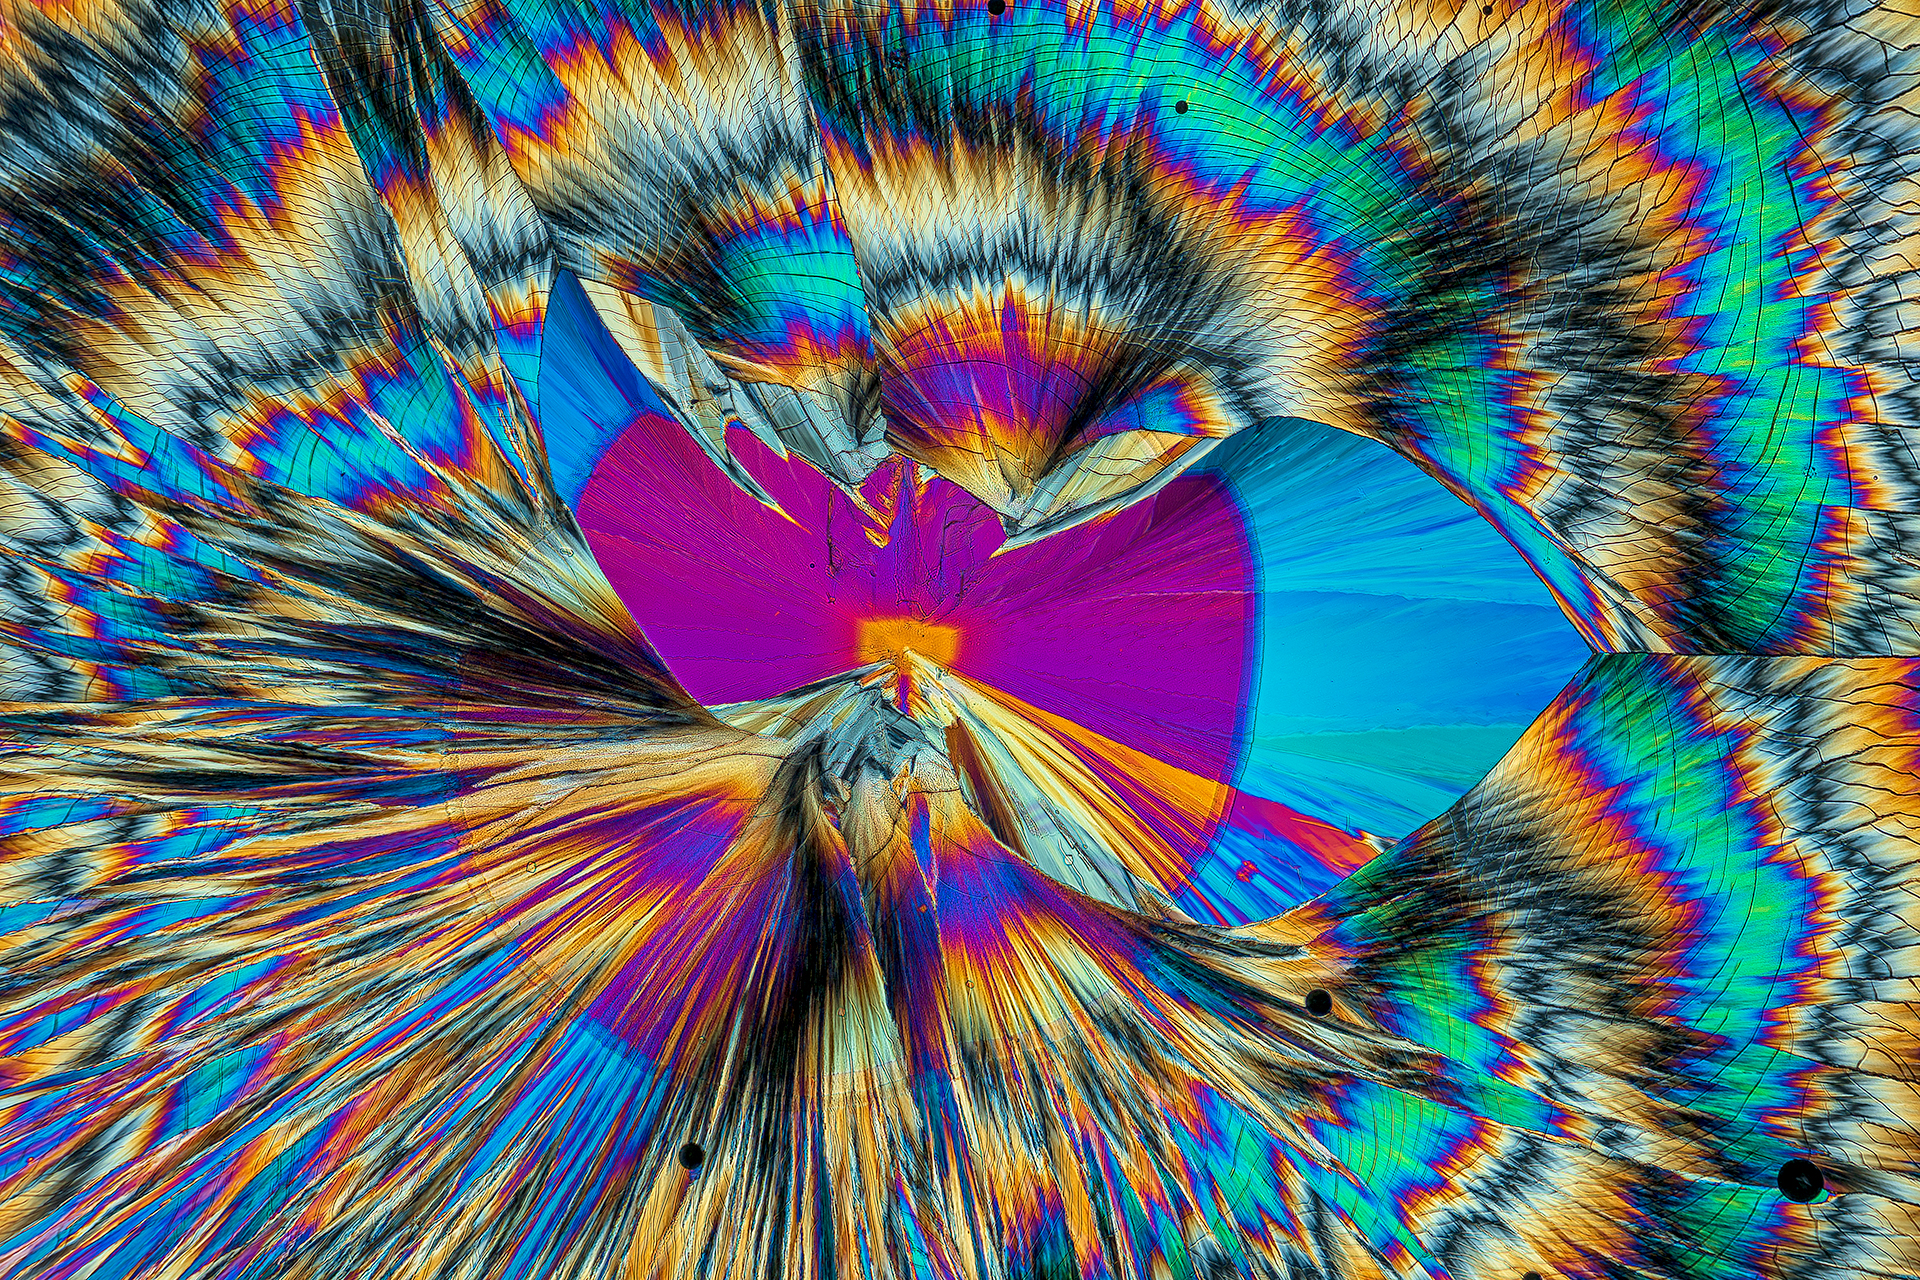 Hippursäure in einer Vergrößerung von 250:1, Mikro Kristall im polarisierten Licht.